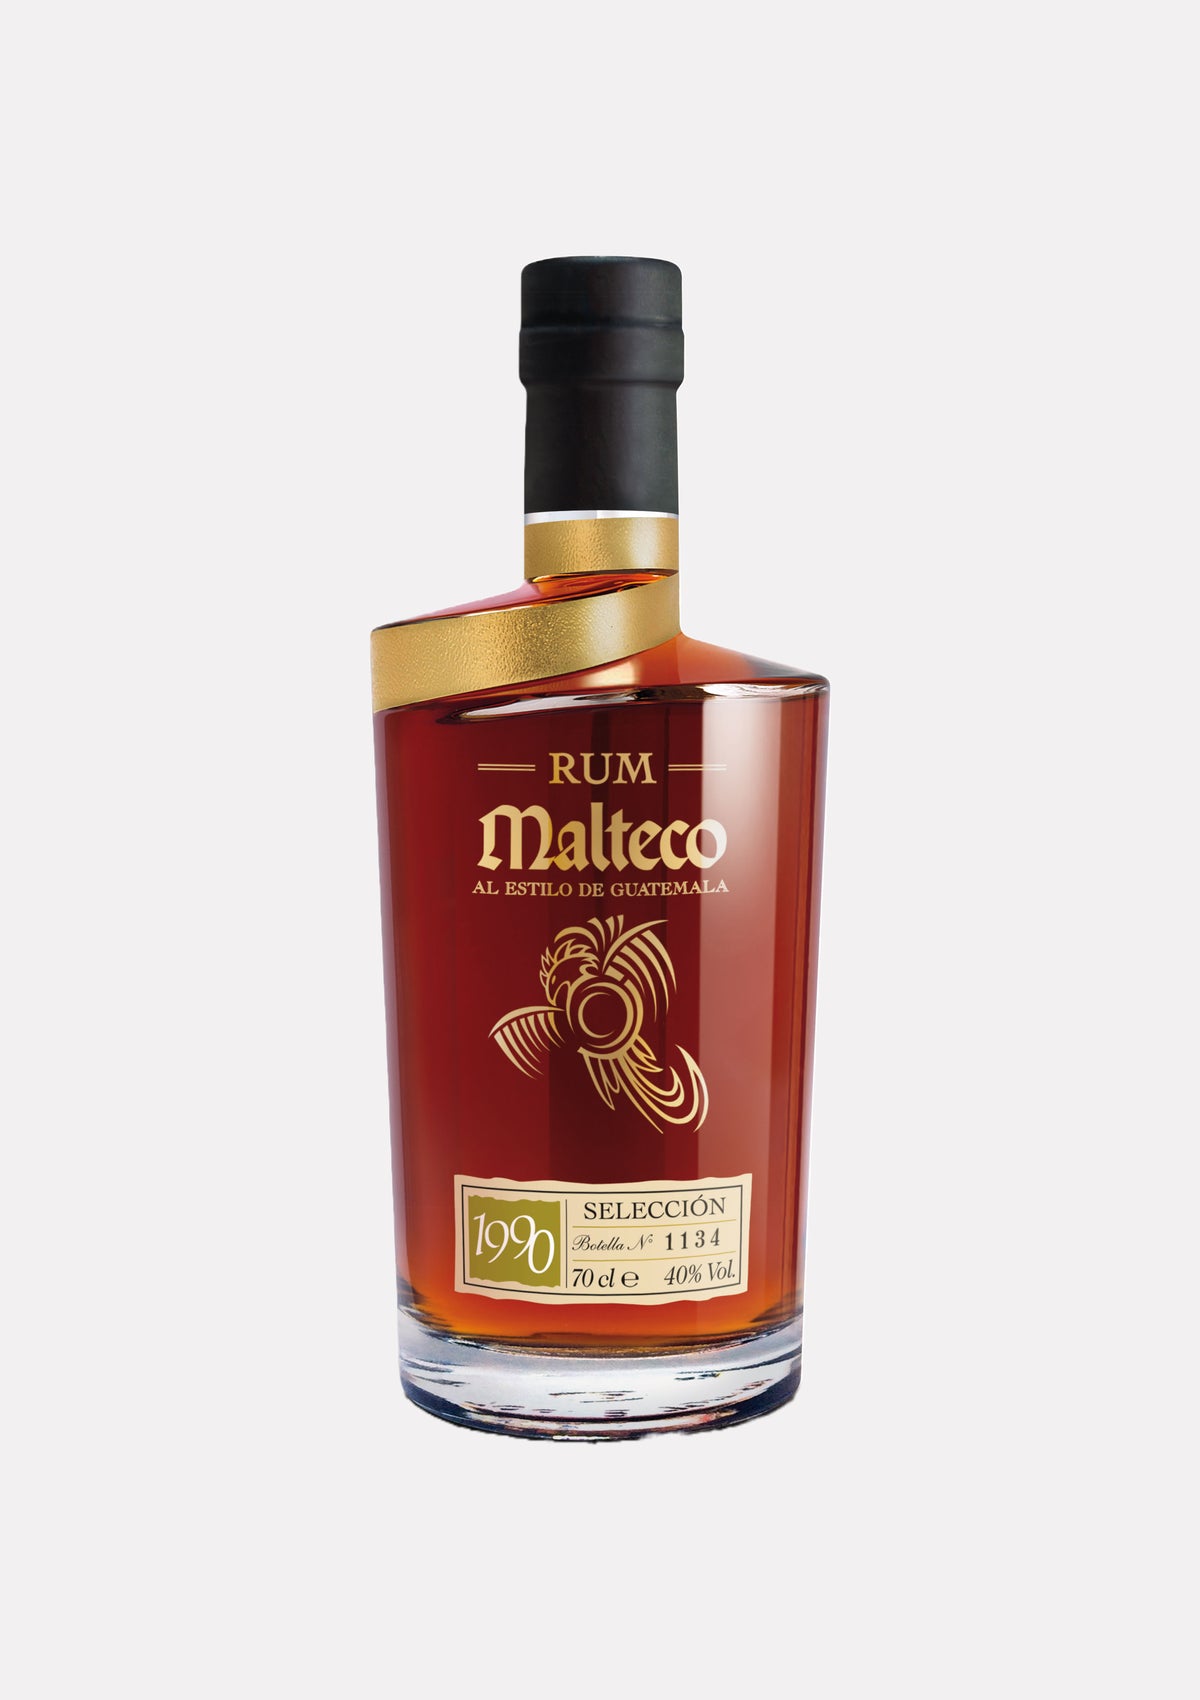 Rum Malteco 1990